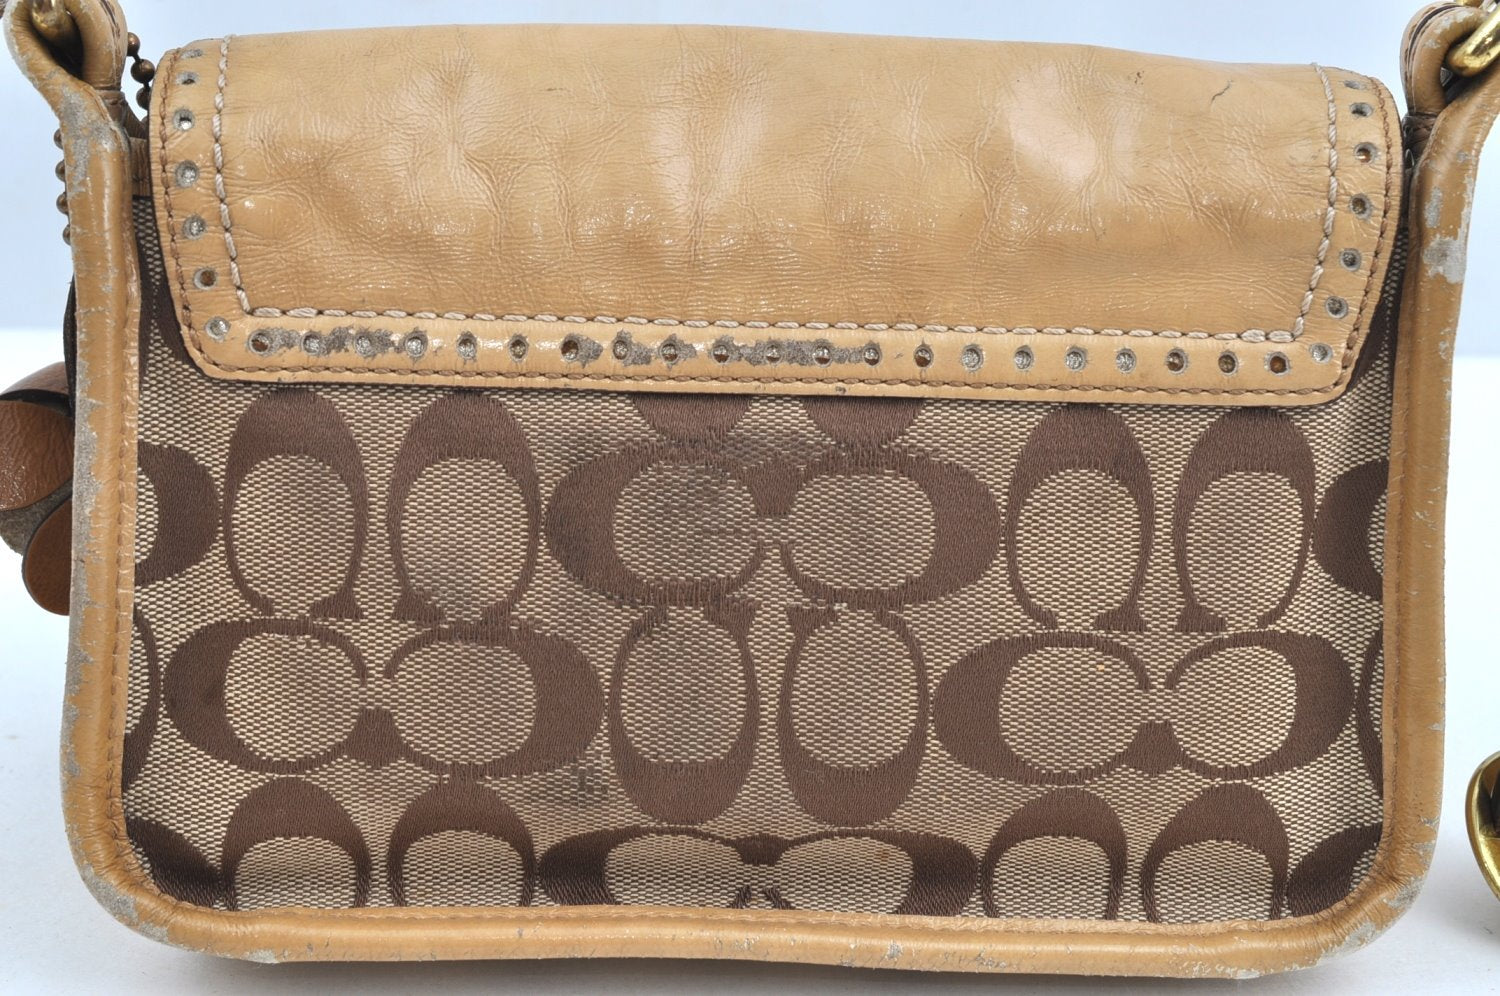 Authentic COACH Signature Shoulder Cross Bag Canvas Leather 12502 Brown K6495